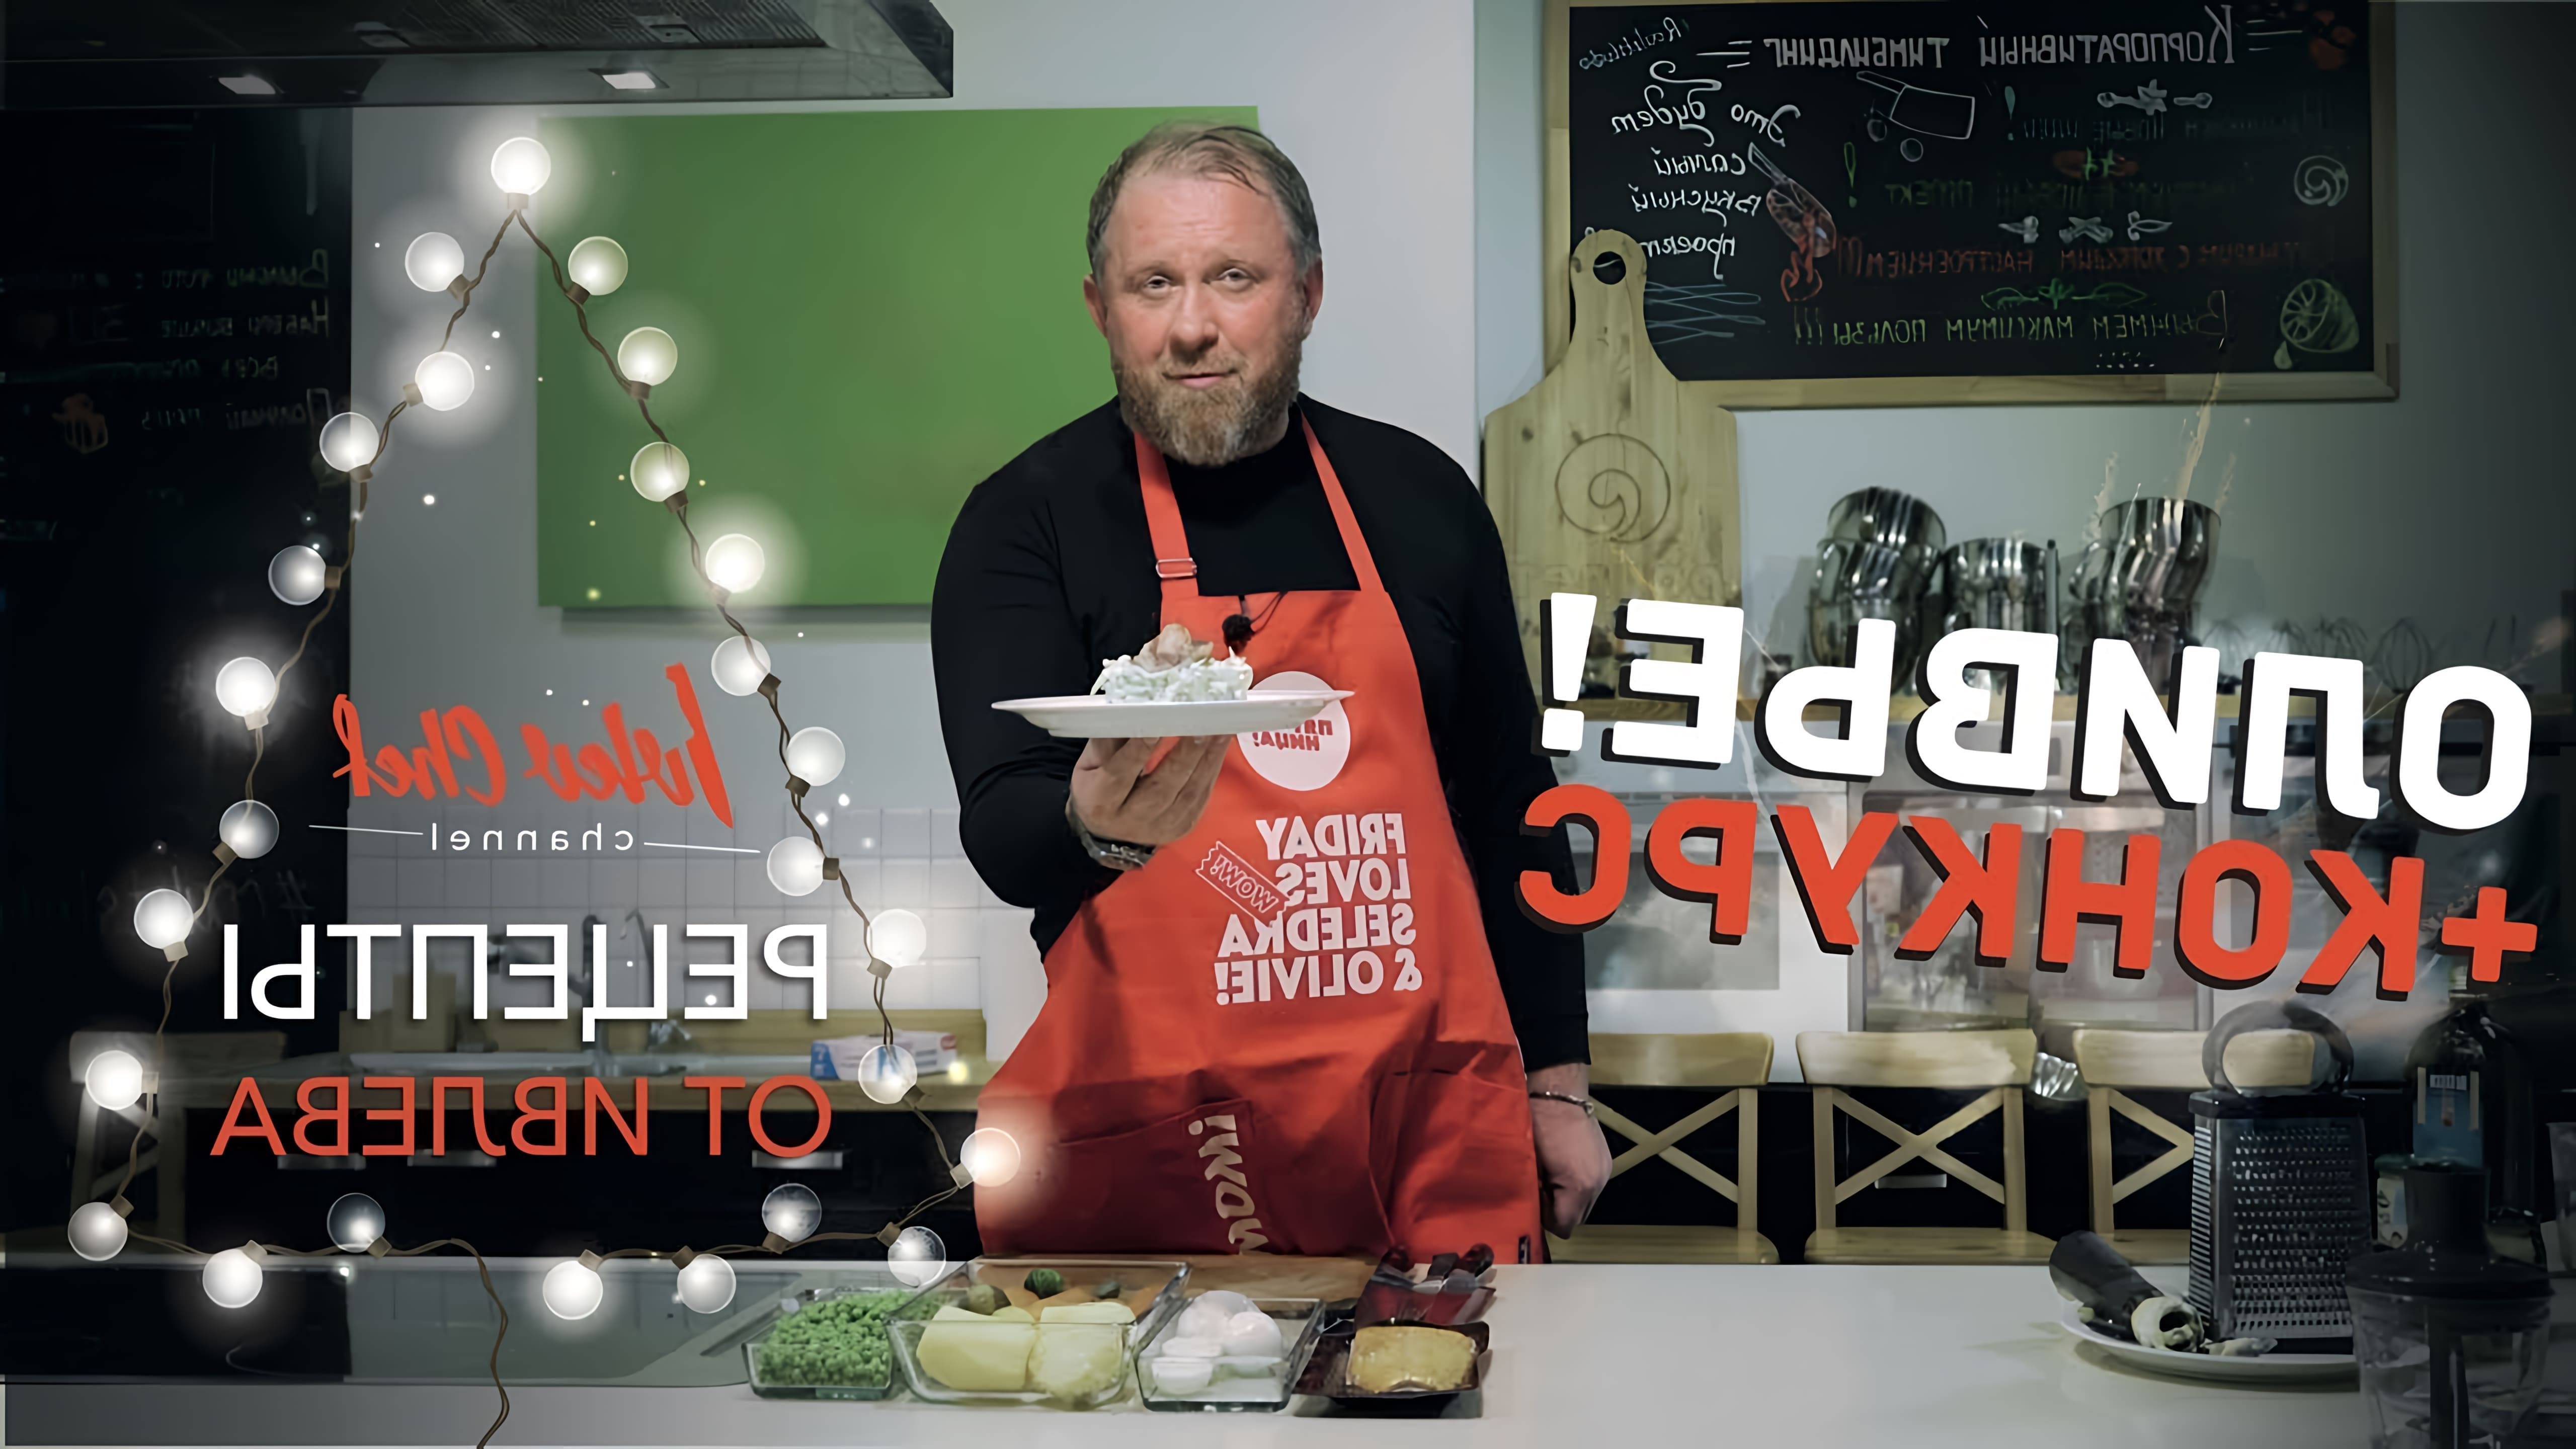 В этом видео шеф-повар Ивлев готовит салат Оливье по своему рецепту